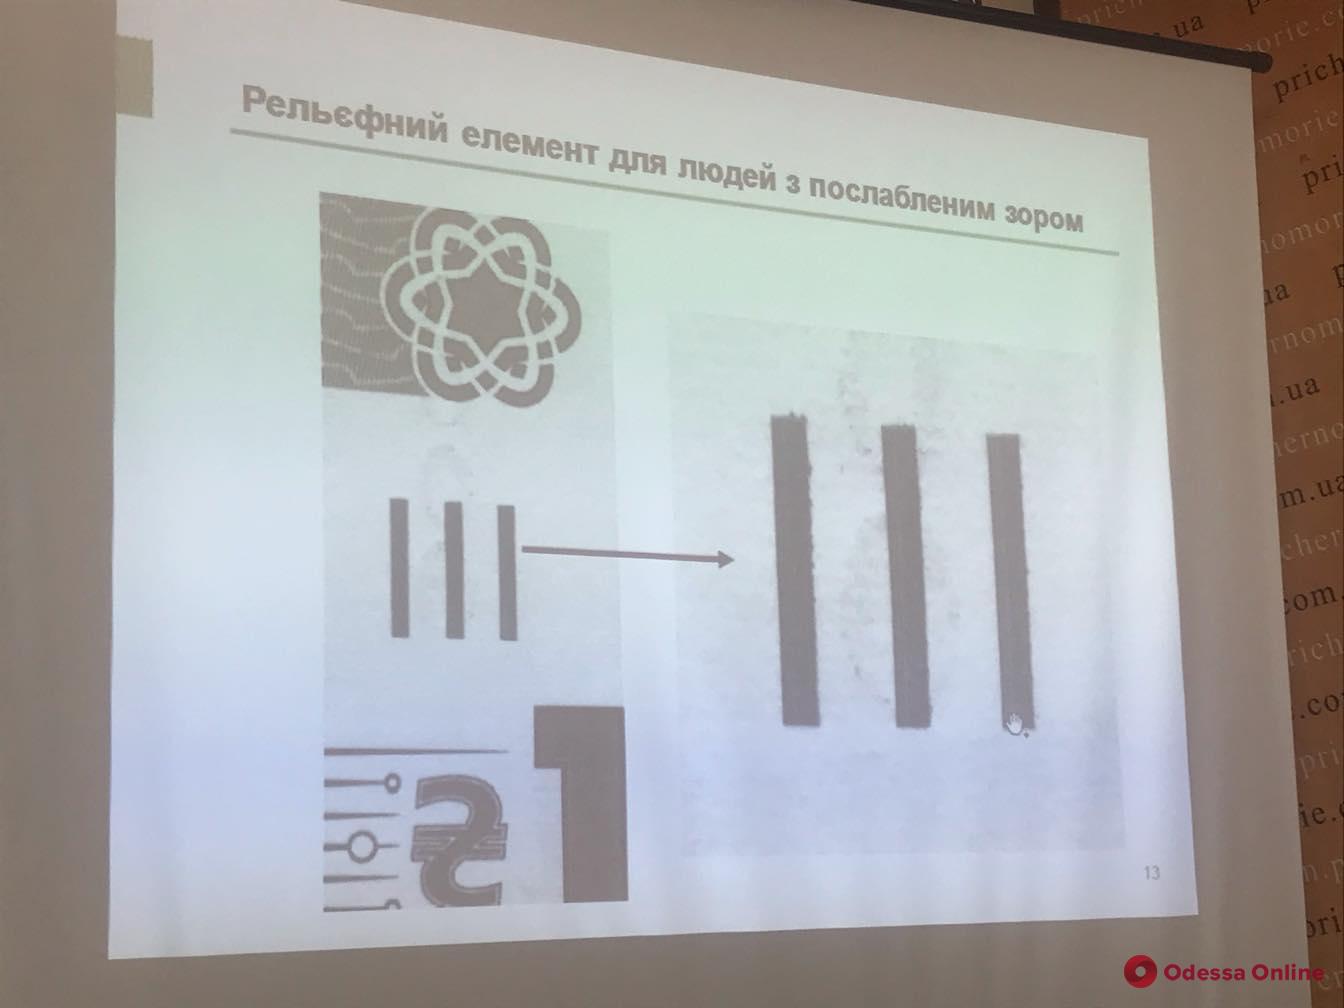 Академик Вернадский попал на деньги: в Одессе презентовали новую купюру номиналом 1000 гривен